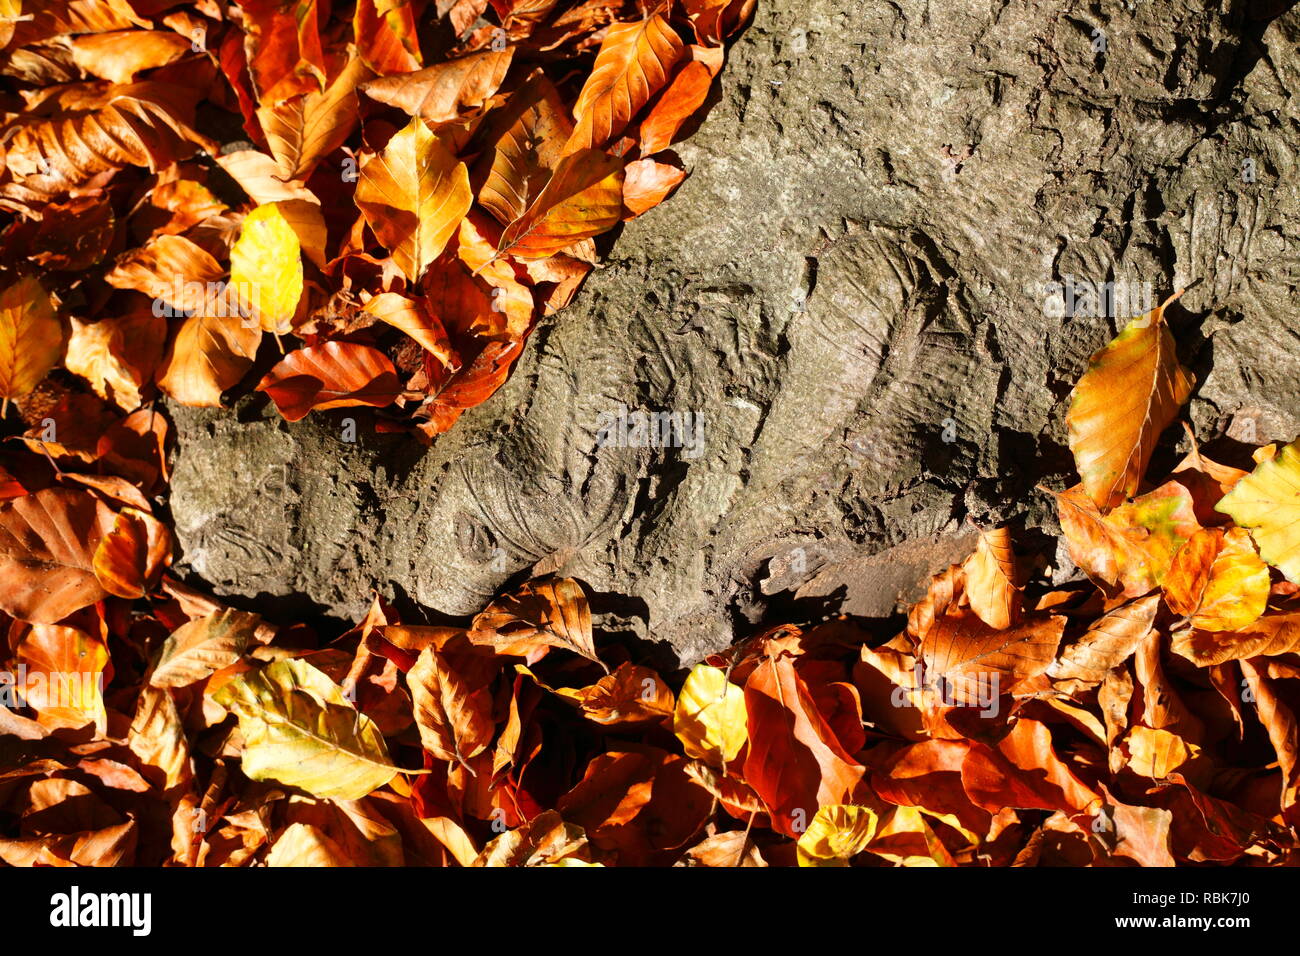 Alten knorrigen Baumstamm, bunte Blätter im Herbst auf dem Boden liegend, Deutschland, Europa ich Alter knorriger Baumstamm, buntes Herbstlaub auf dem Boden liegen Stockfoto